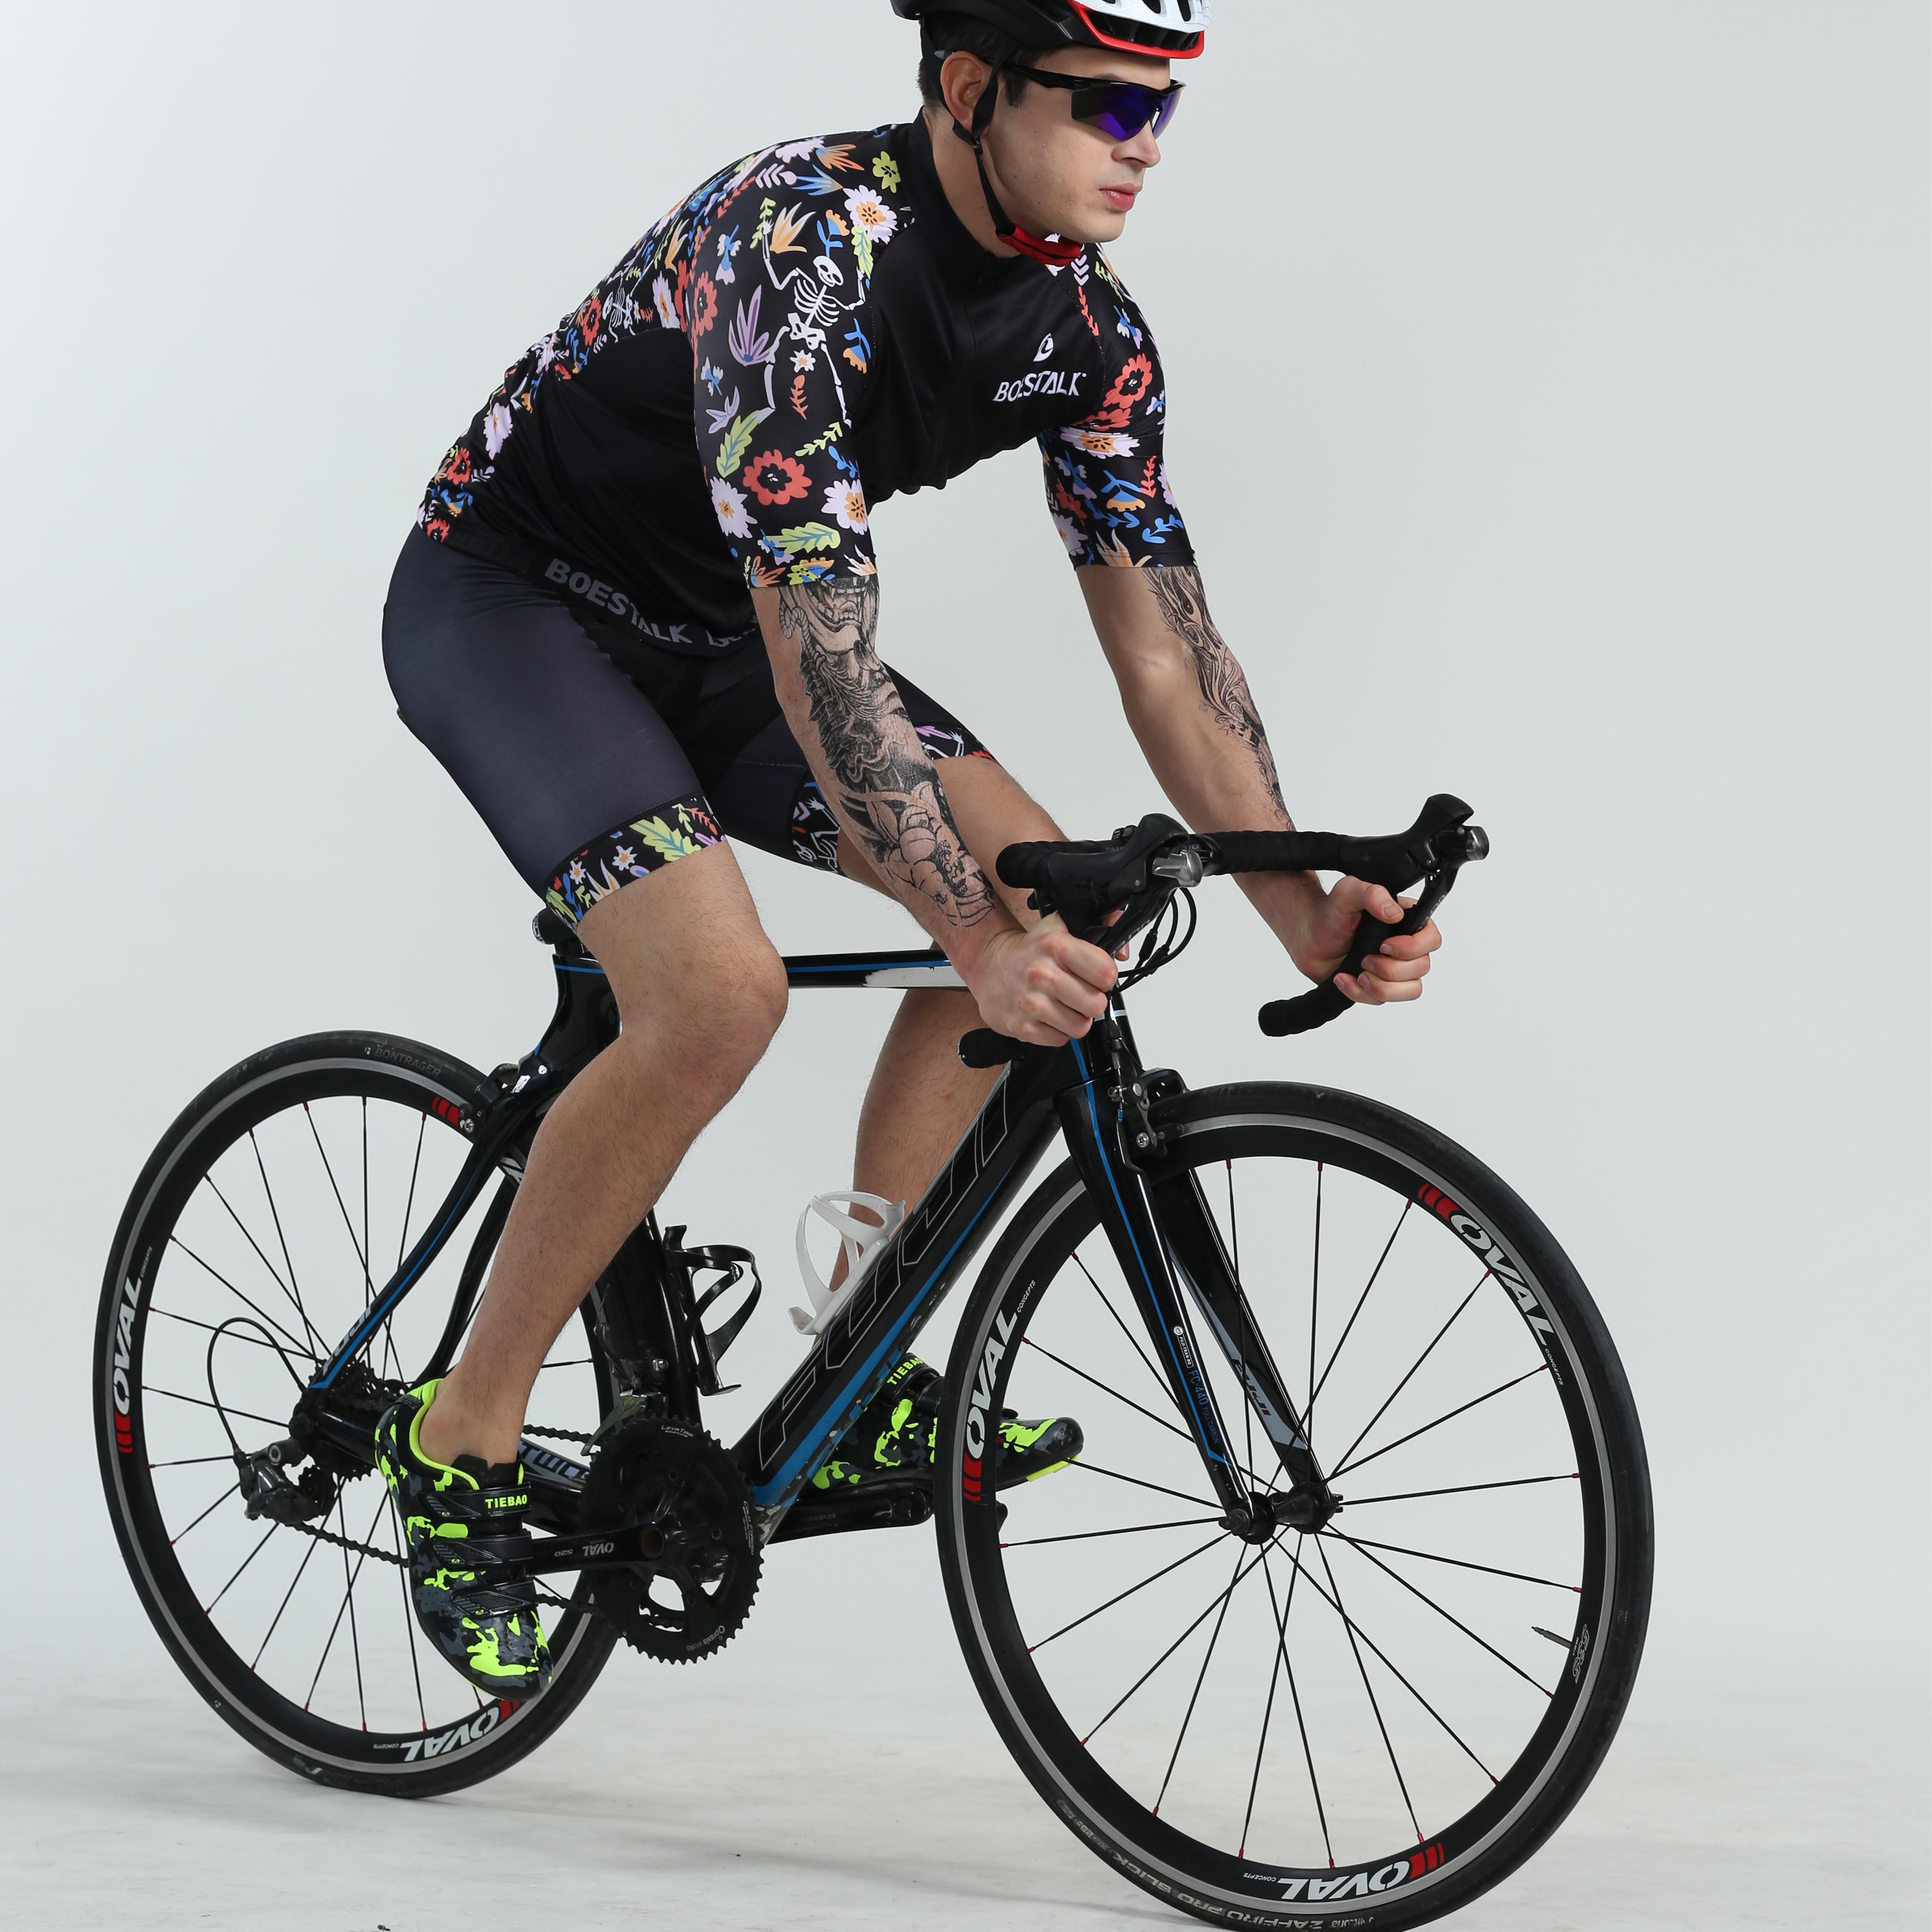 Изображение товара: Велосипедный тренировочный костюм BOESTALK, летний мужской комплект одежды для горного велоспорта, спортивный костюм для активного отдыха